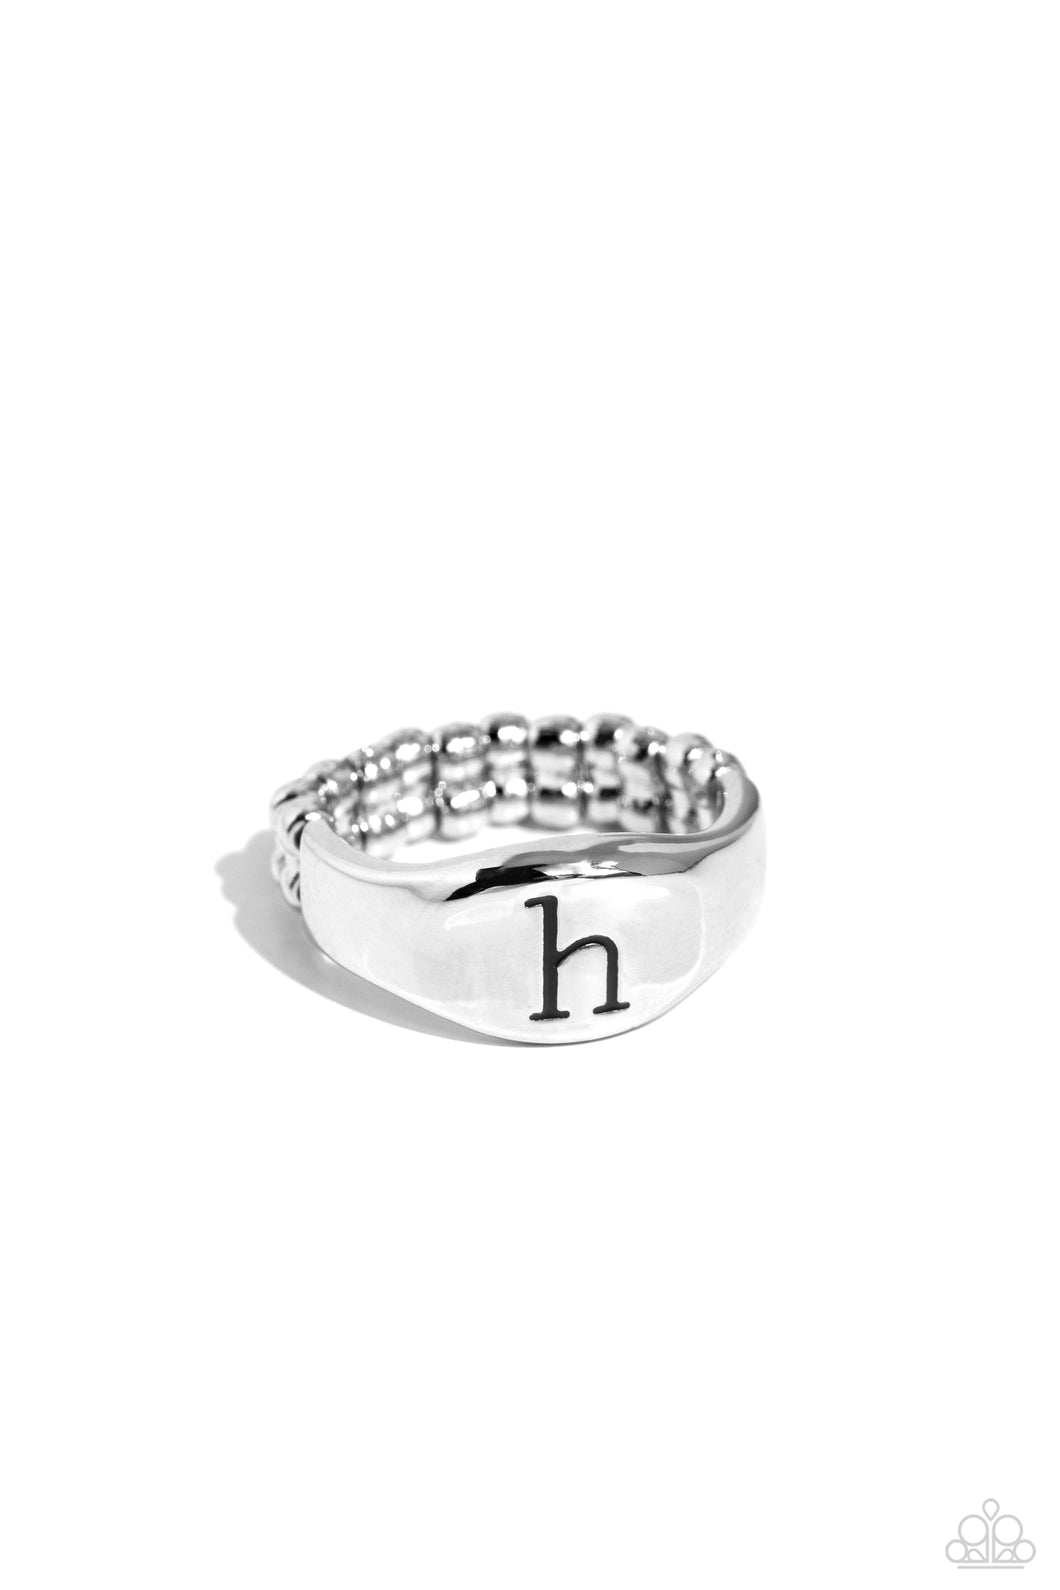 Monogram Memento - Silver - H Initial Ring